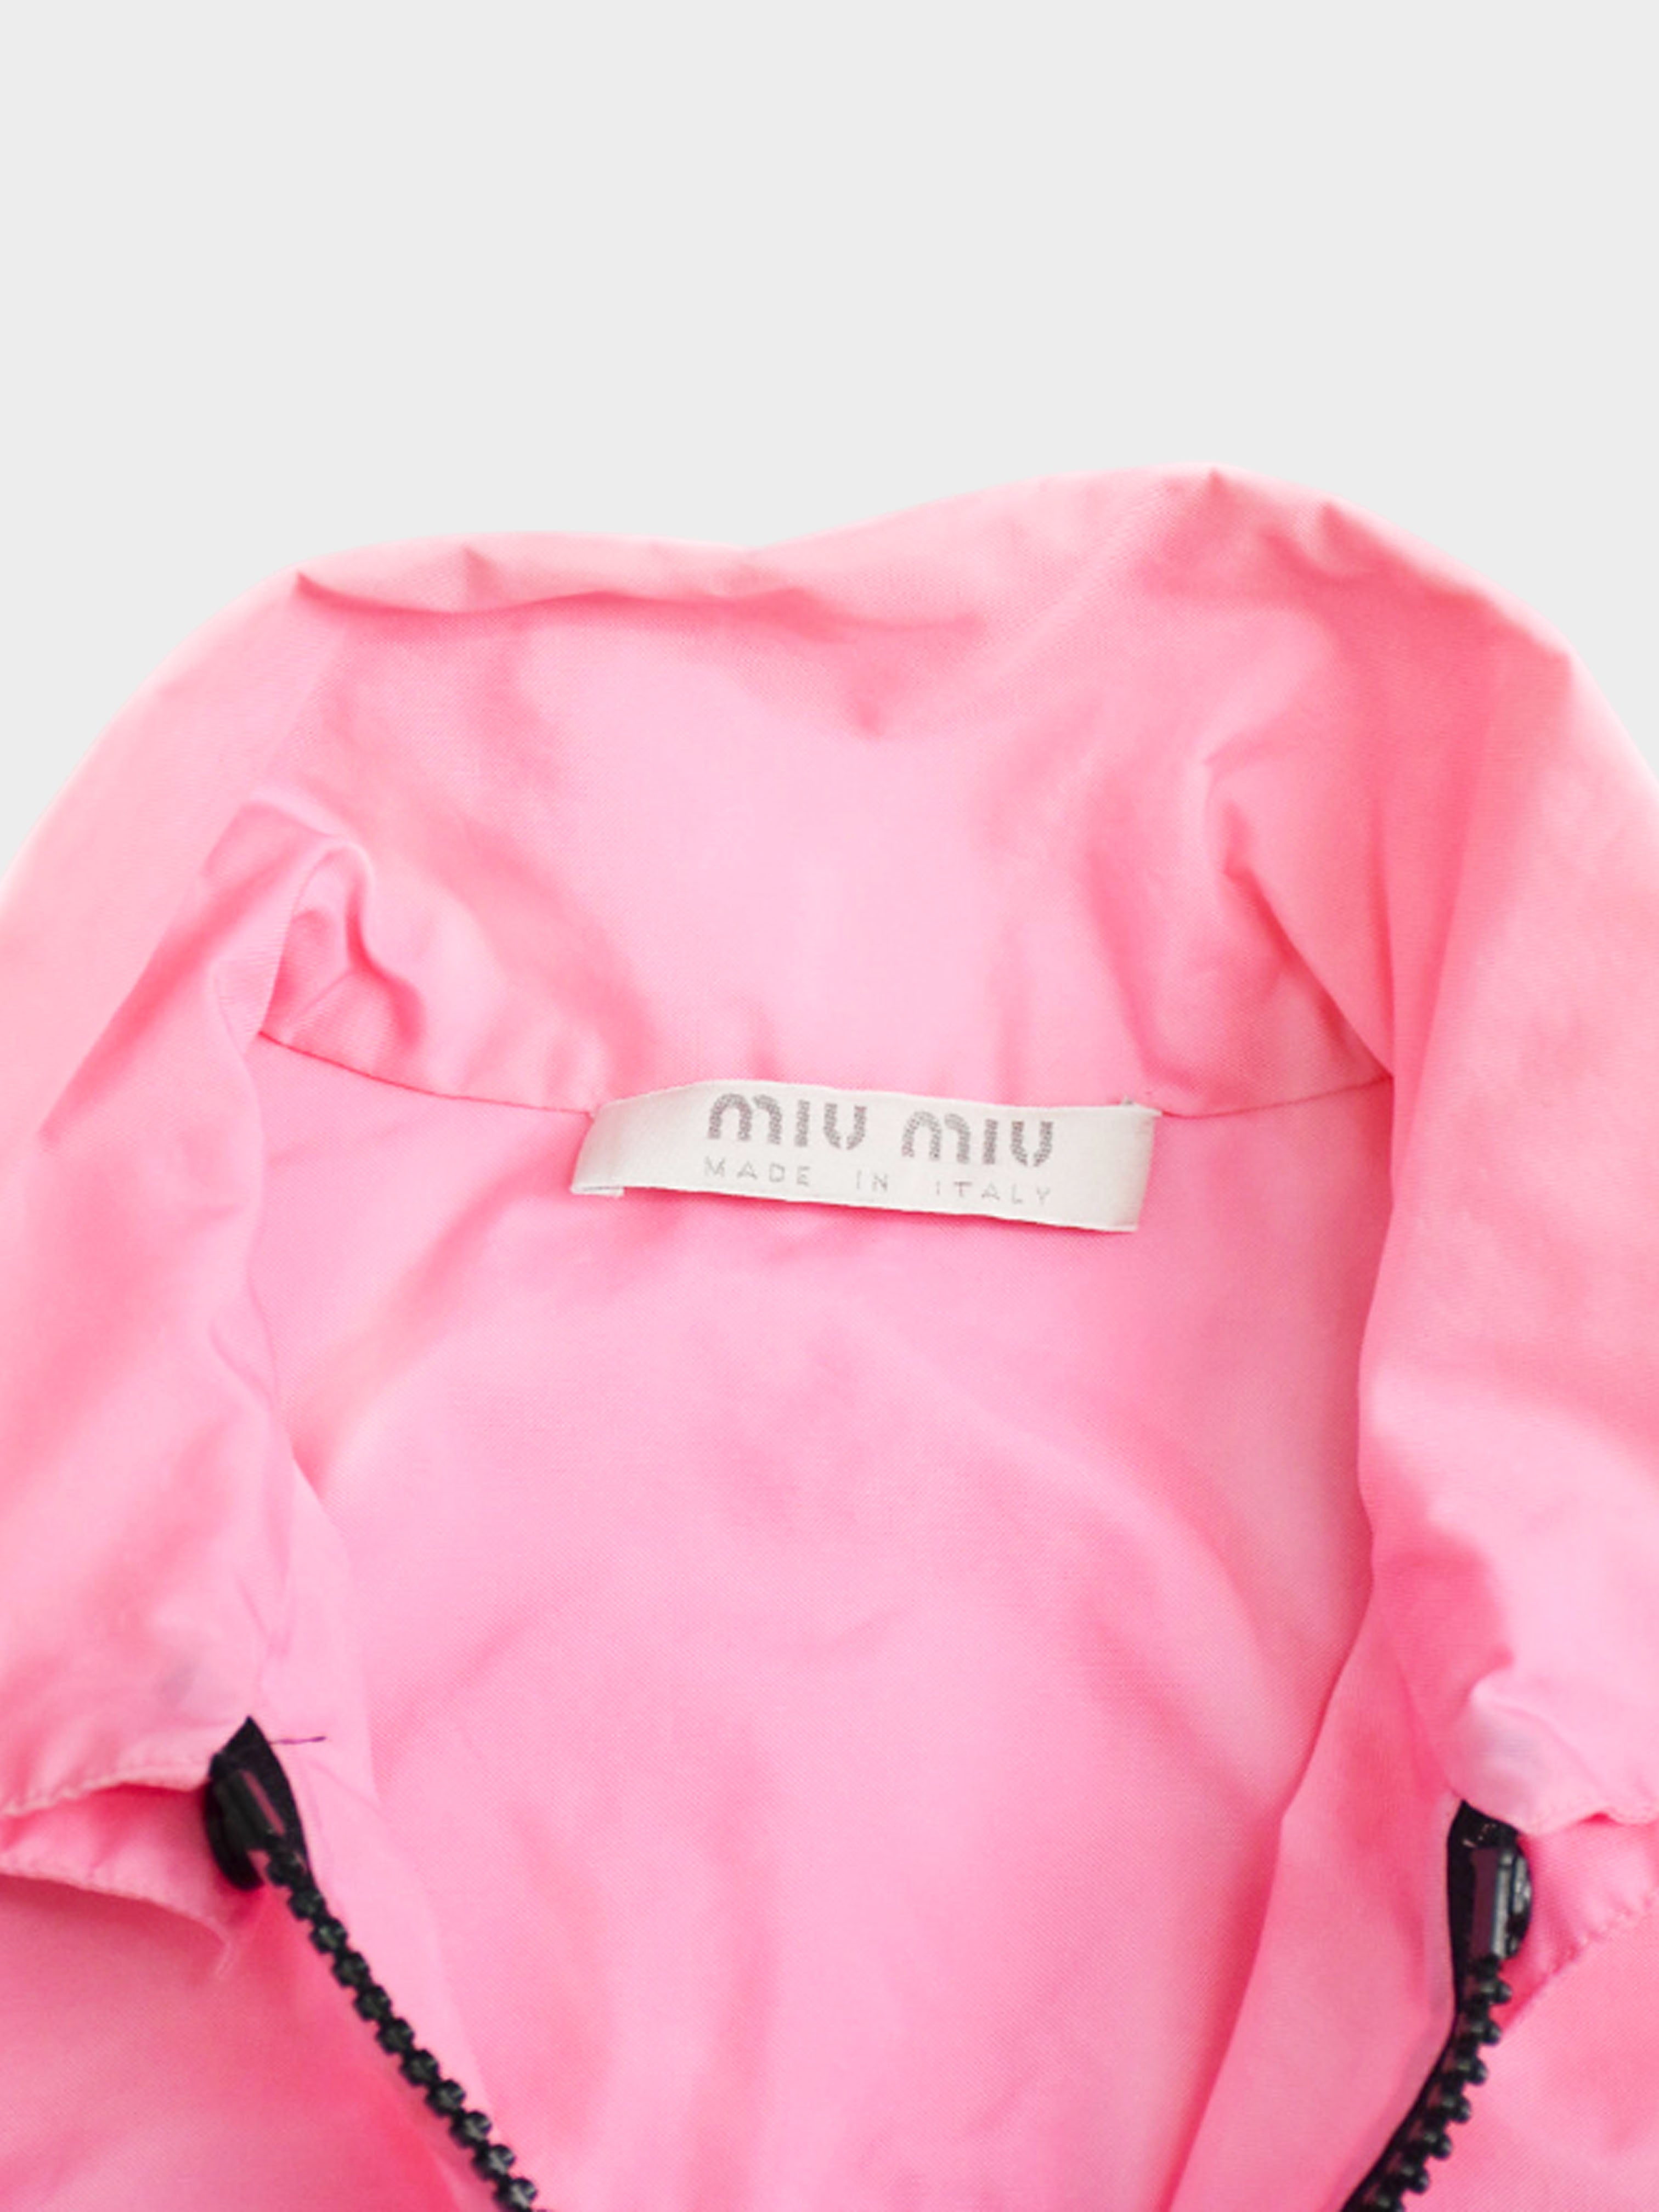 Miu Miu SS 1999 Pink Polyester Jacket